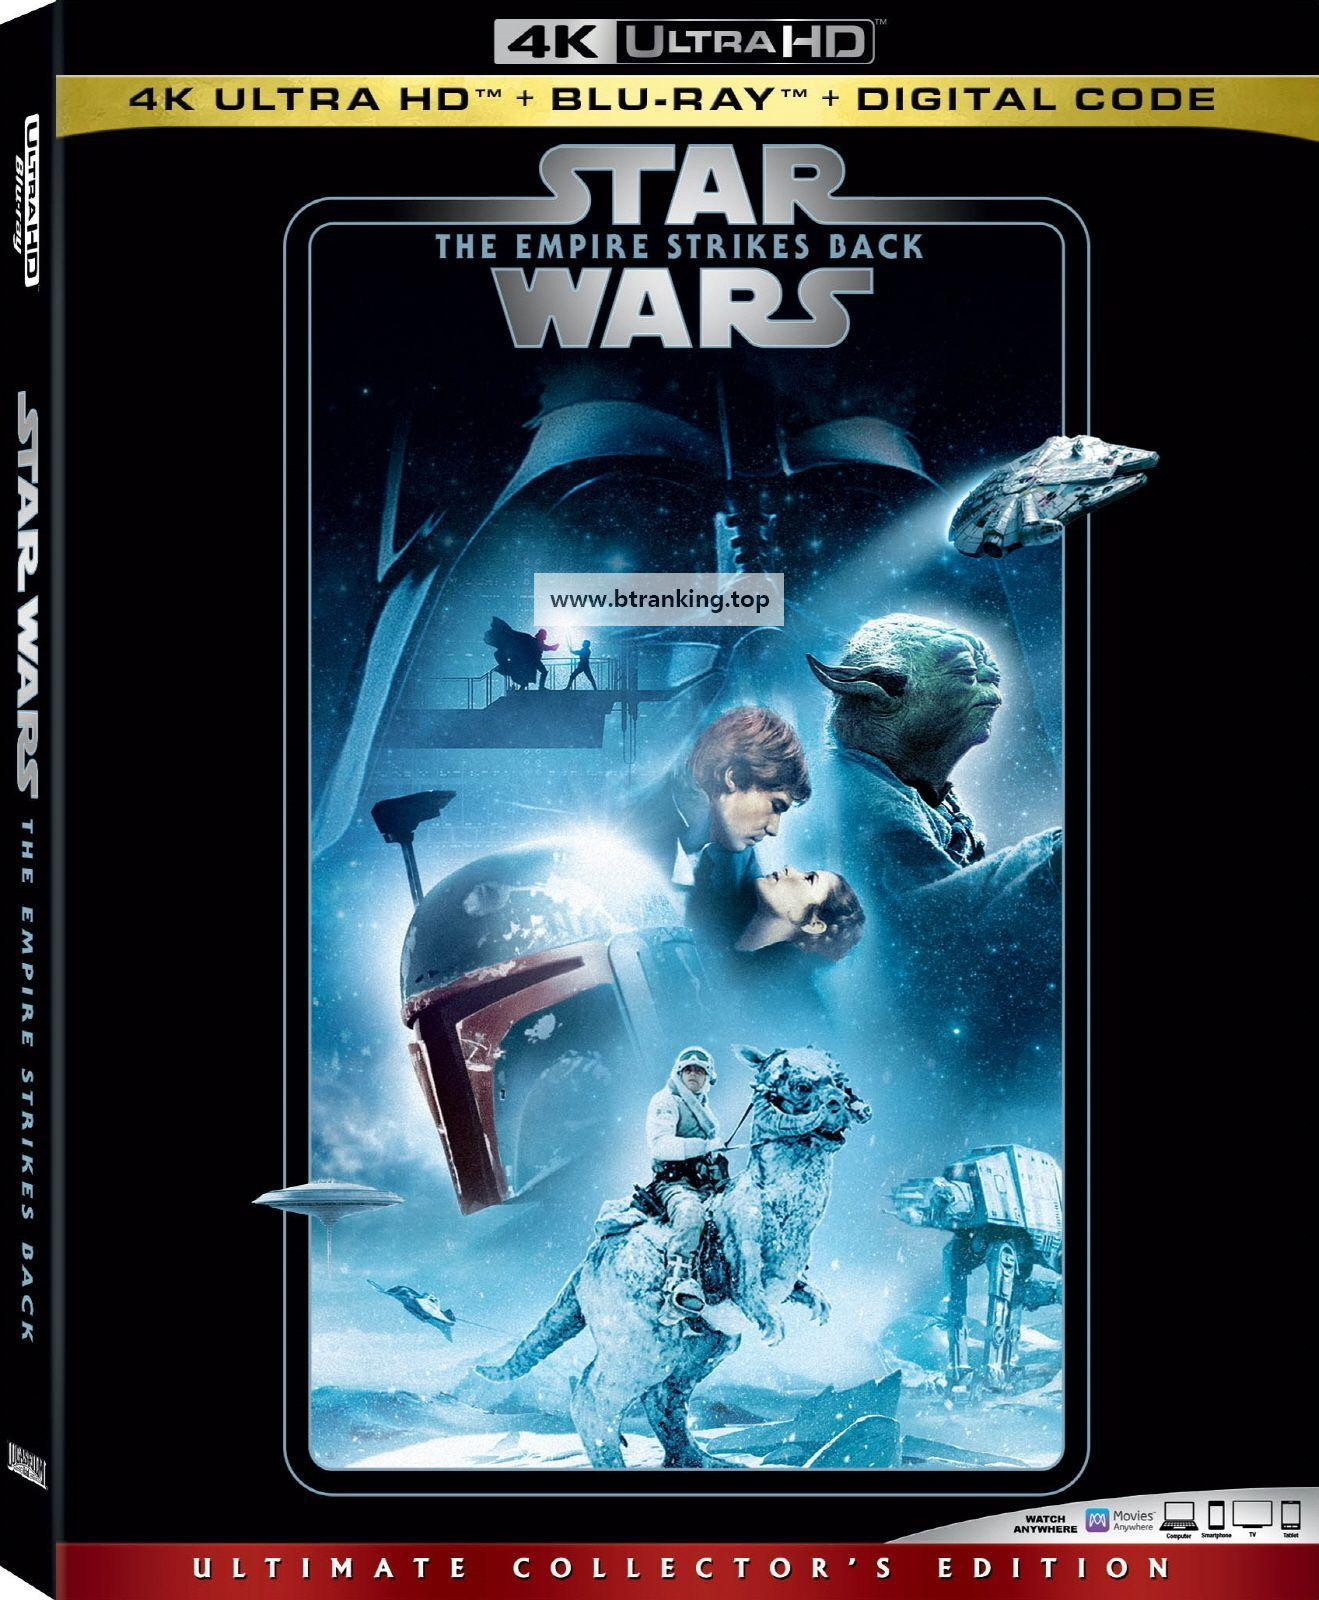 스타워즈 에피소드 5: 제국의 역습 The Empire Strikes Back (1980) 4K80v1 0 (2160p BluRay x265 10bit Tigole)